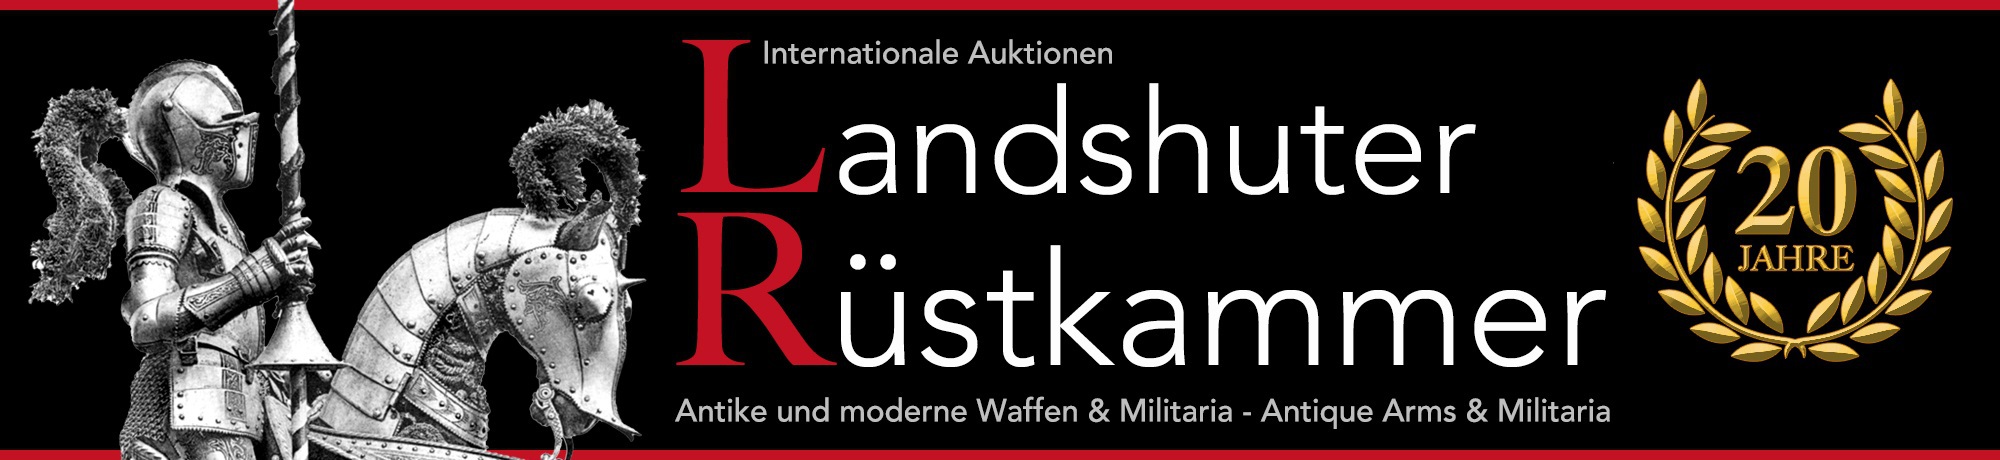 Internationale Auktionen Landshuter Ruestkammer Antike und moderne Waffen & Militaria